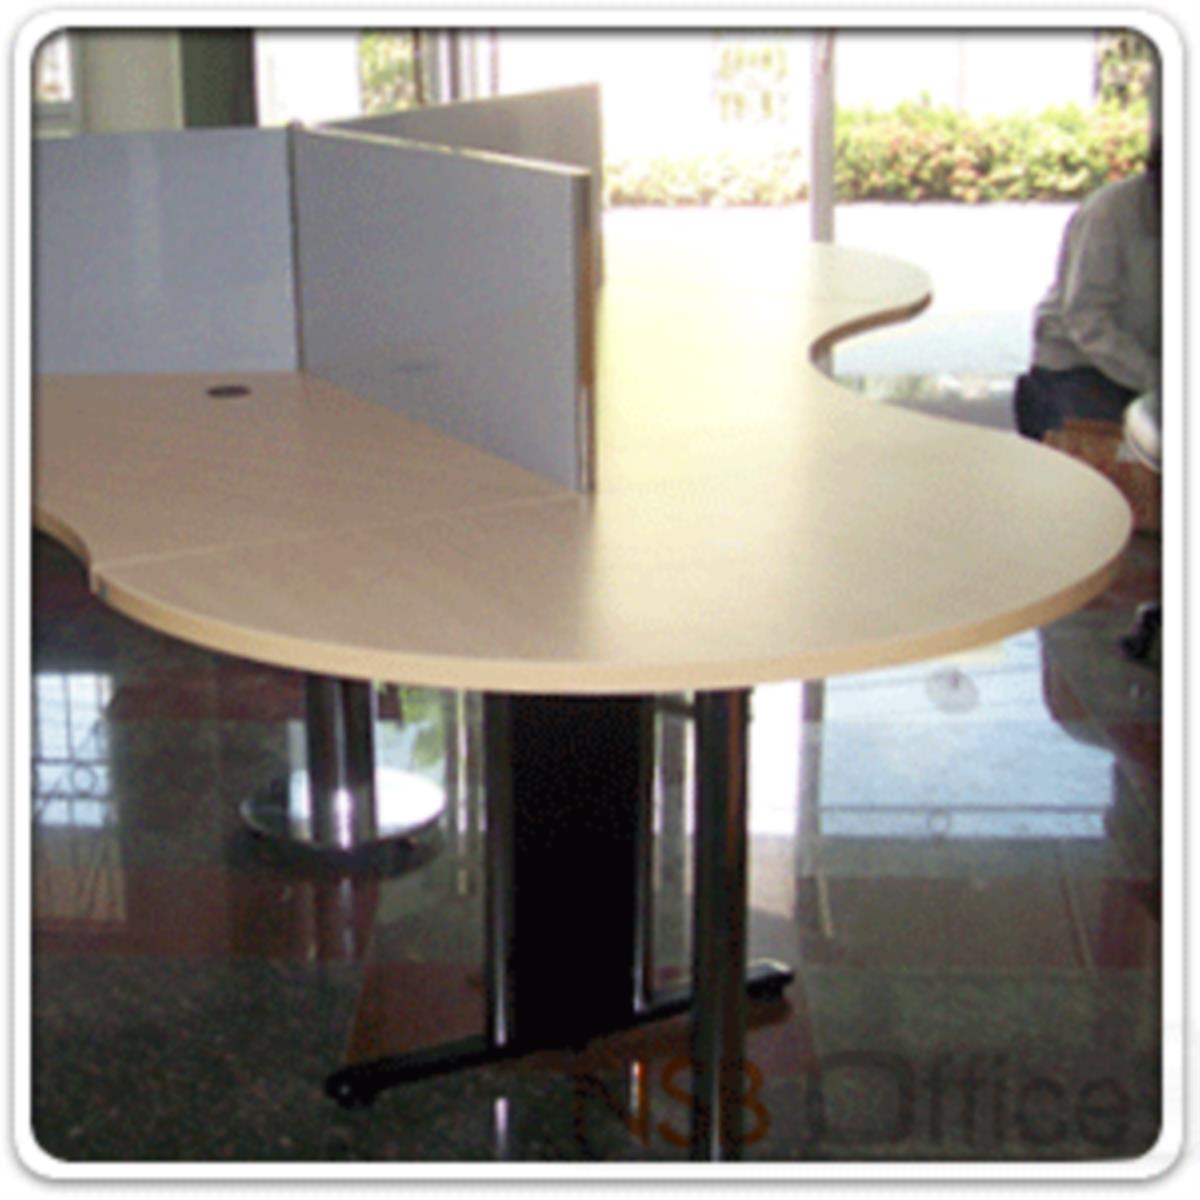 โต๊ะเข้ามุมหัวโค้งแต่ไม่ครึ่งวงกลม รุ่น NSB-2045 ขนาด 120W ,150W ,160W*45D cm.  ขากลมโครเมี่ยม